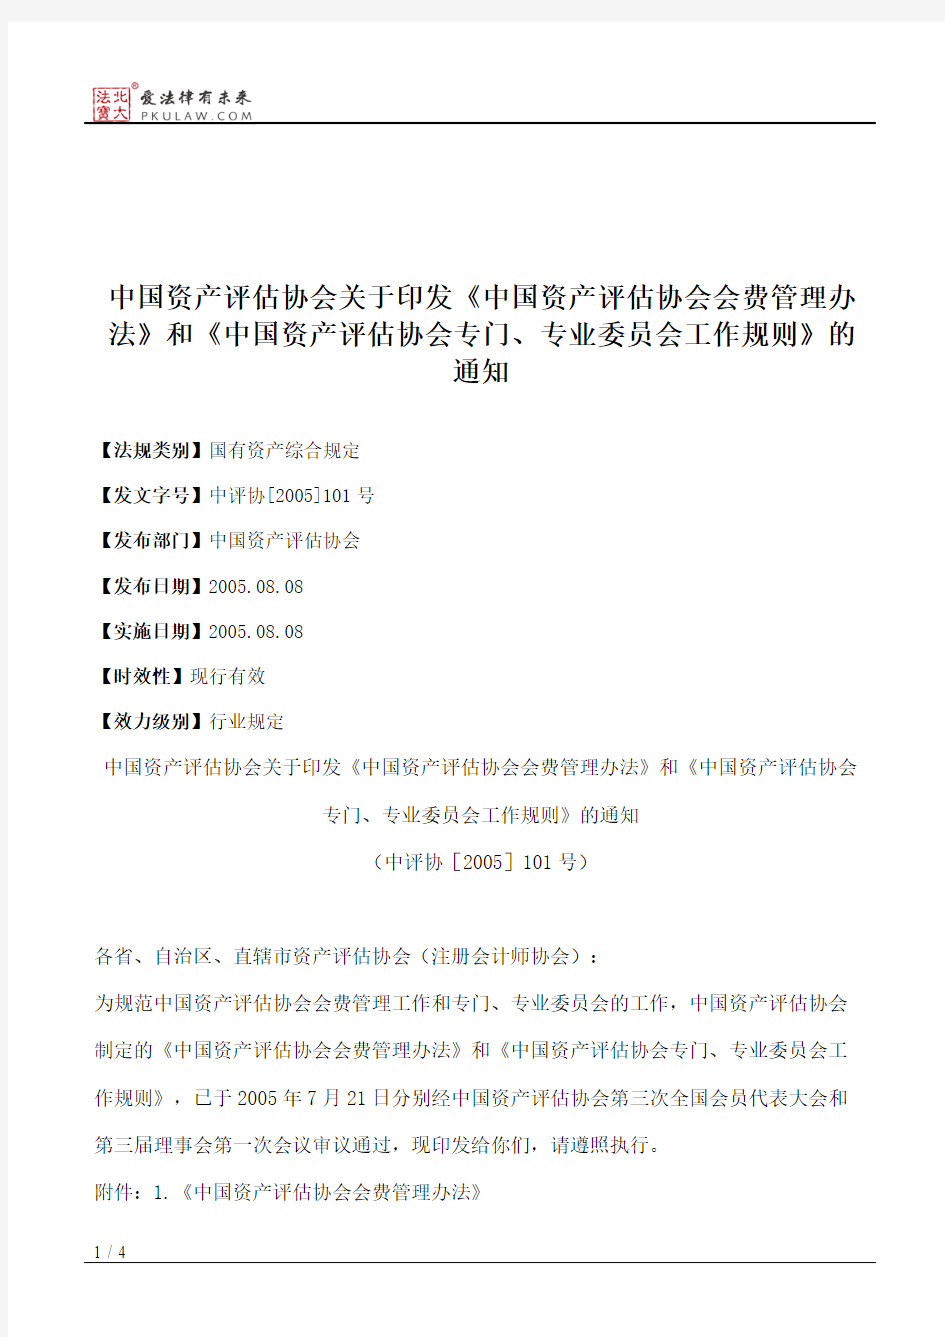 中国资产评估协会关于印发《中国资产评估协会会费管理办法》和《